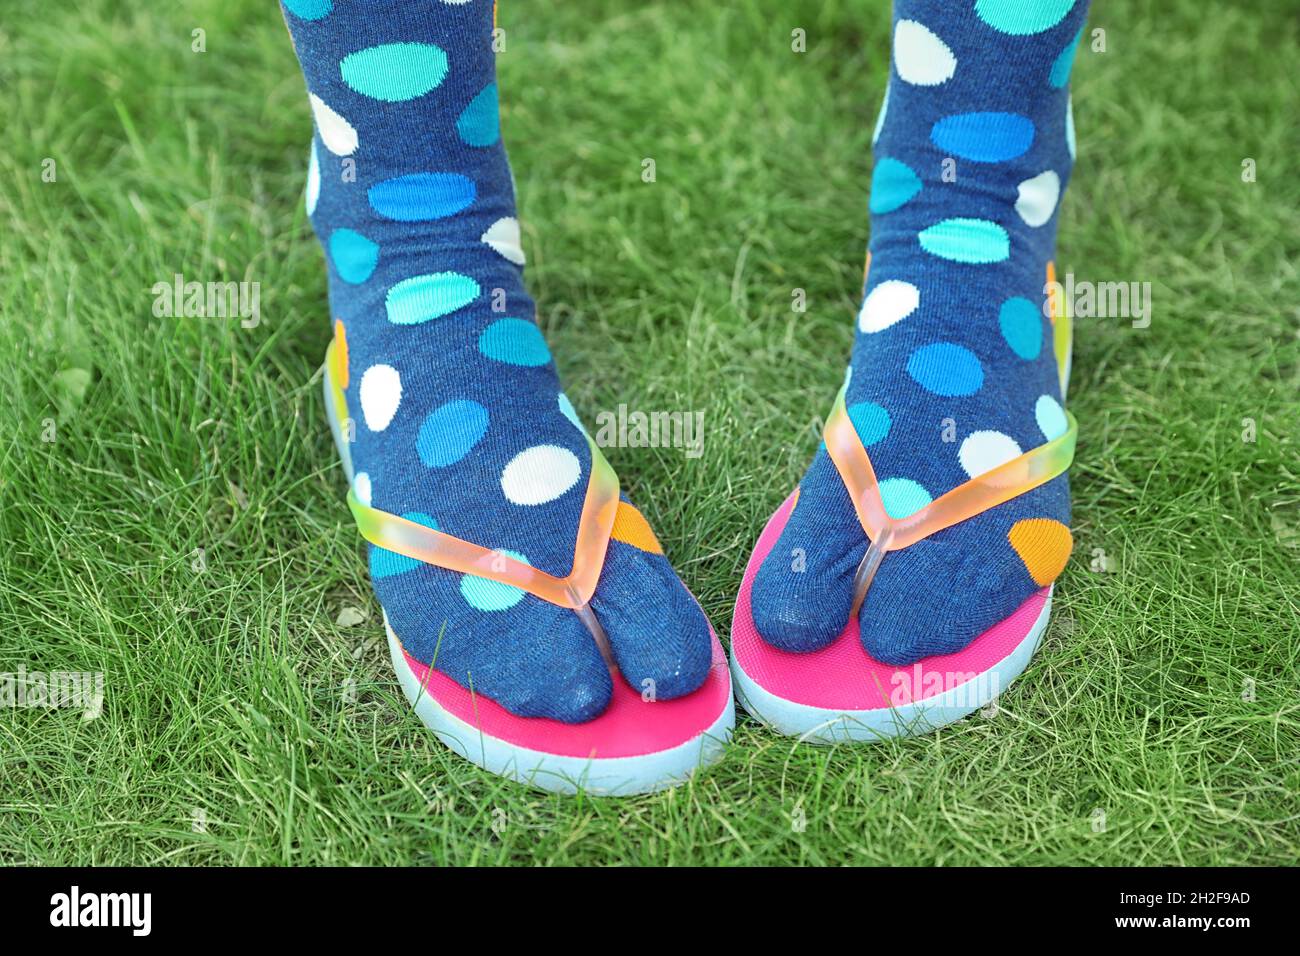 Frau trägt helle Socken mit Flip-Flops, die auf dem Boden stehen  Stockfotografie - Alamy